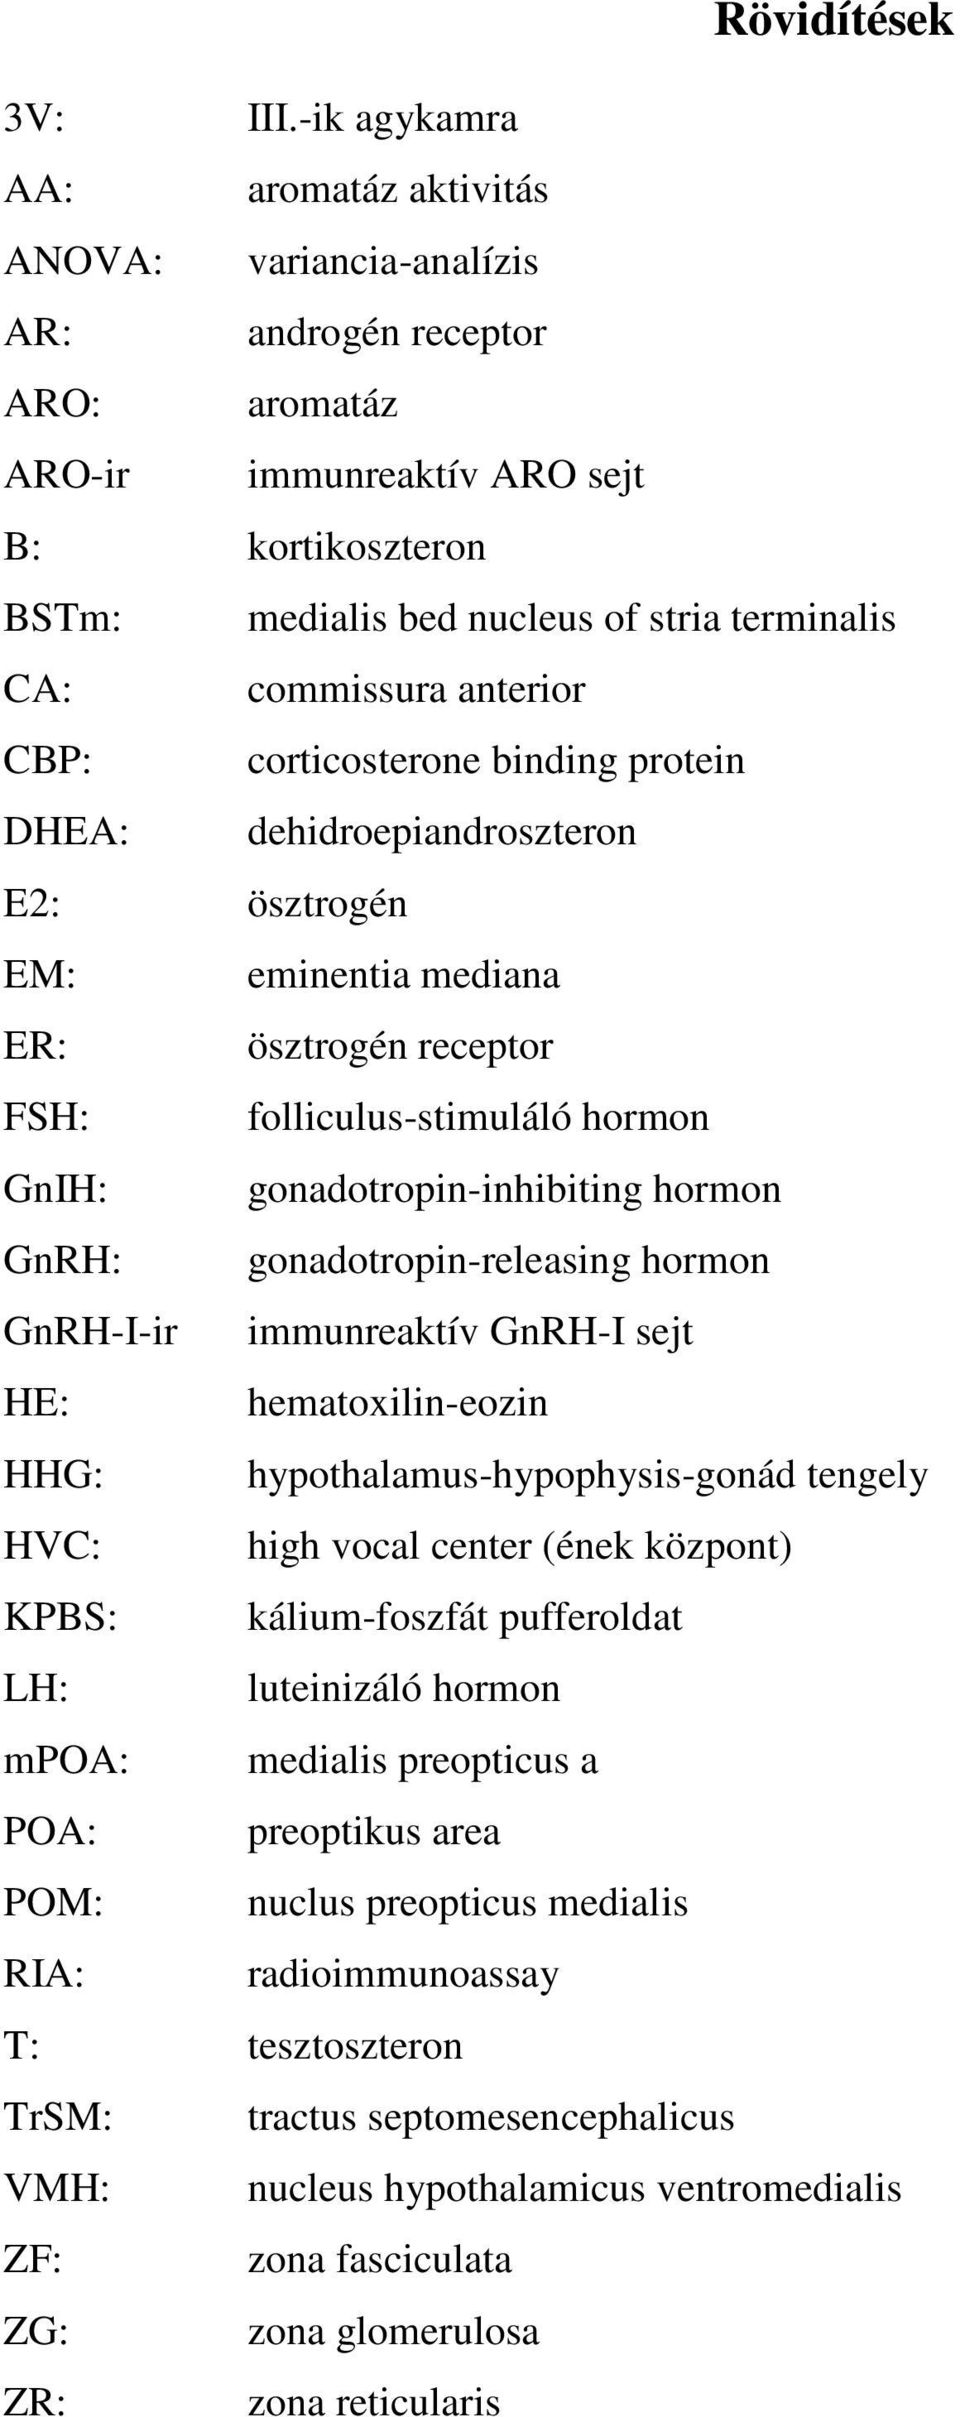 commissura anterior CBP: corticosterone binding protein DHEA: dehidroepiandroszteron E2: ösztrogén EM: eminentia mediana ER: ösztrogén receptor FSH: folliculus-stimuláló hormon GnIH: